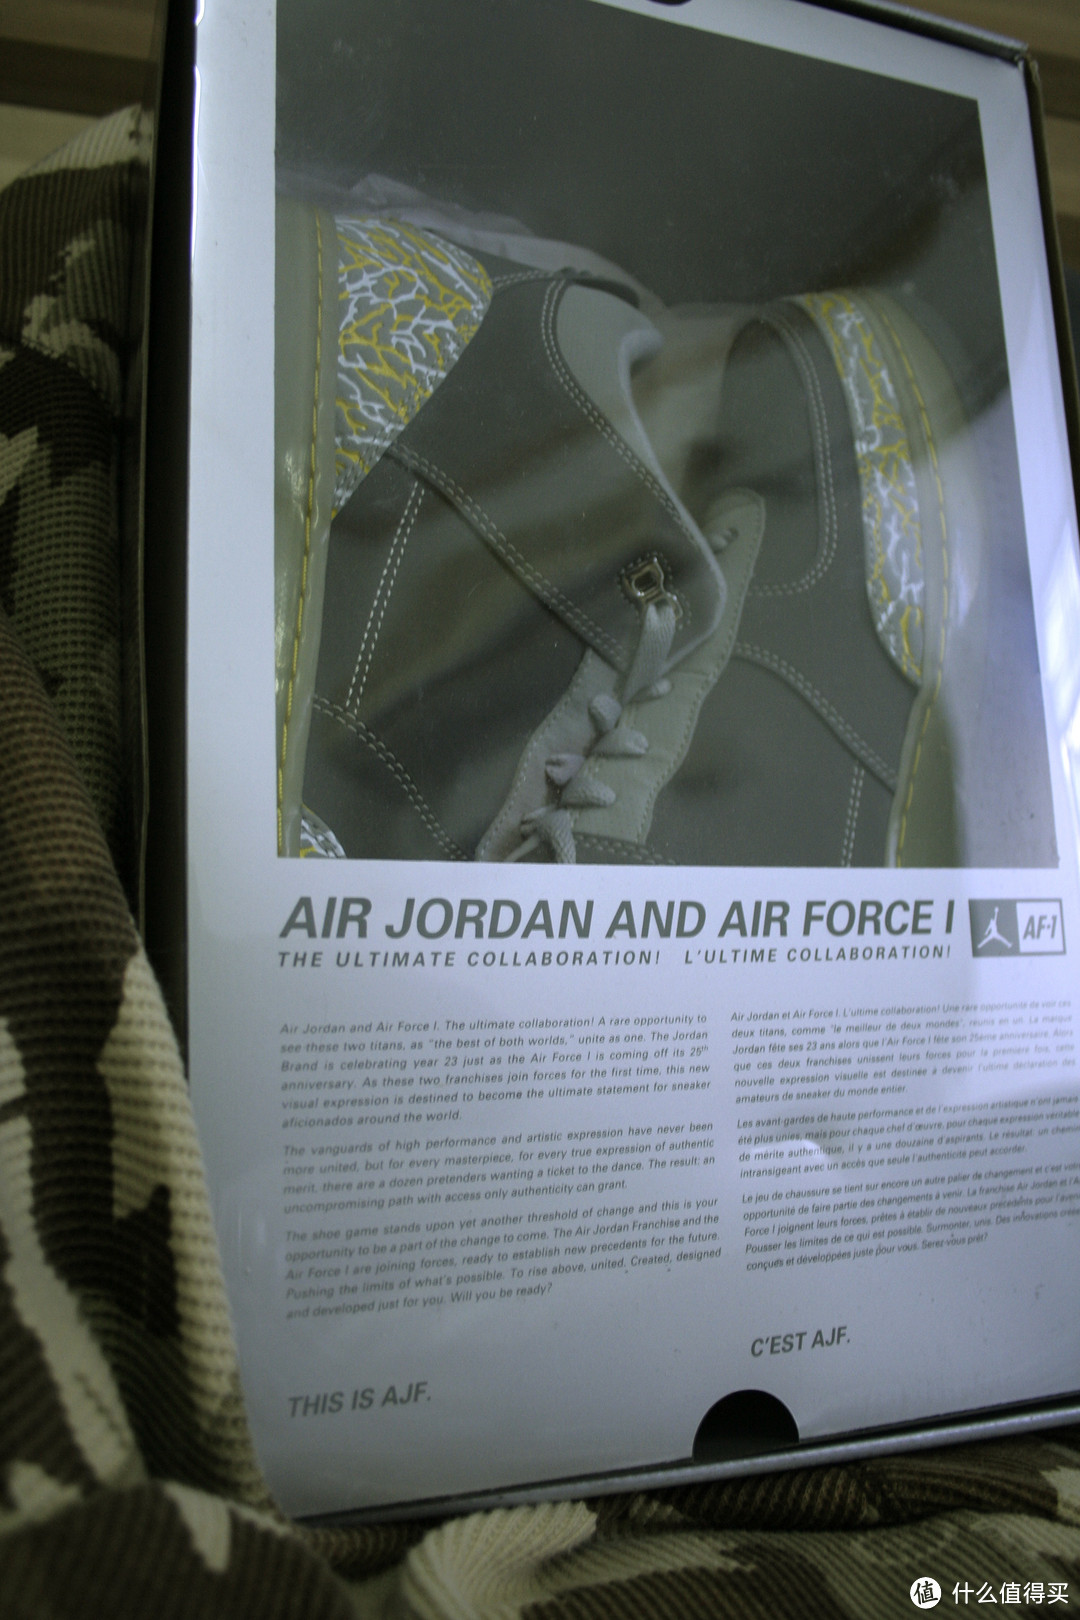 小黑&小灰——Nike 耐克 lunar AF1& Jordan AF1爆裂纹